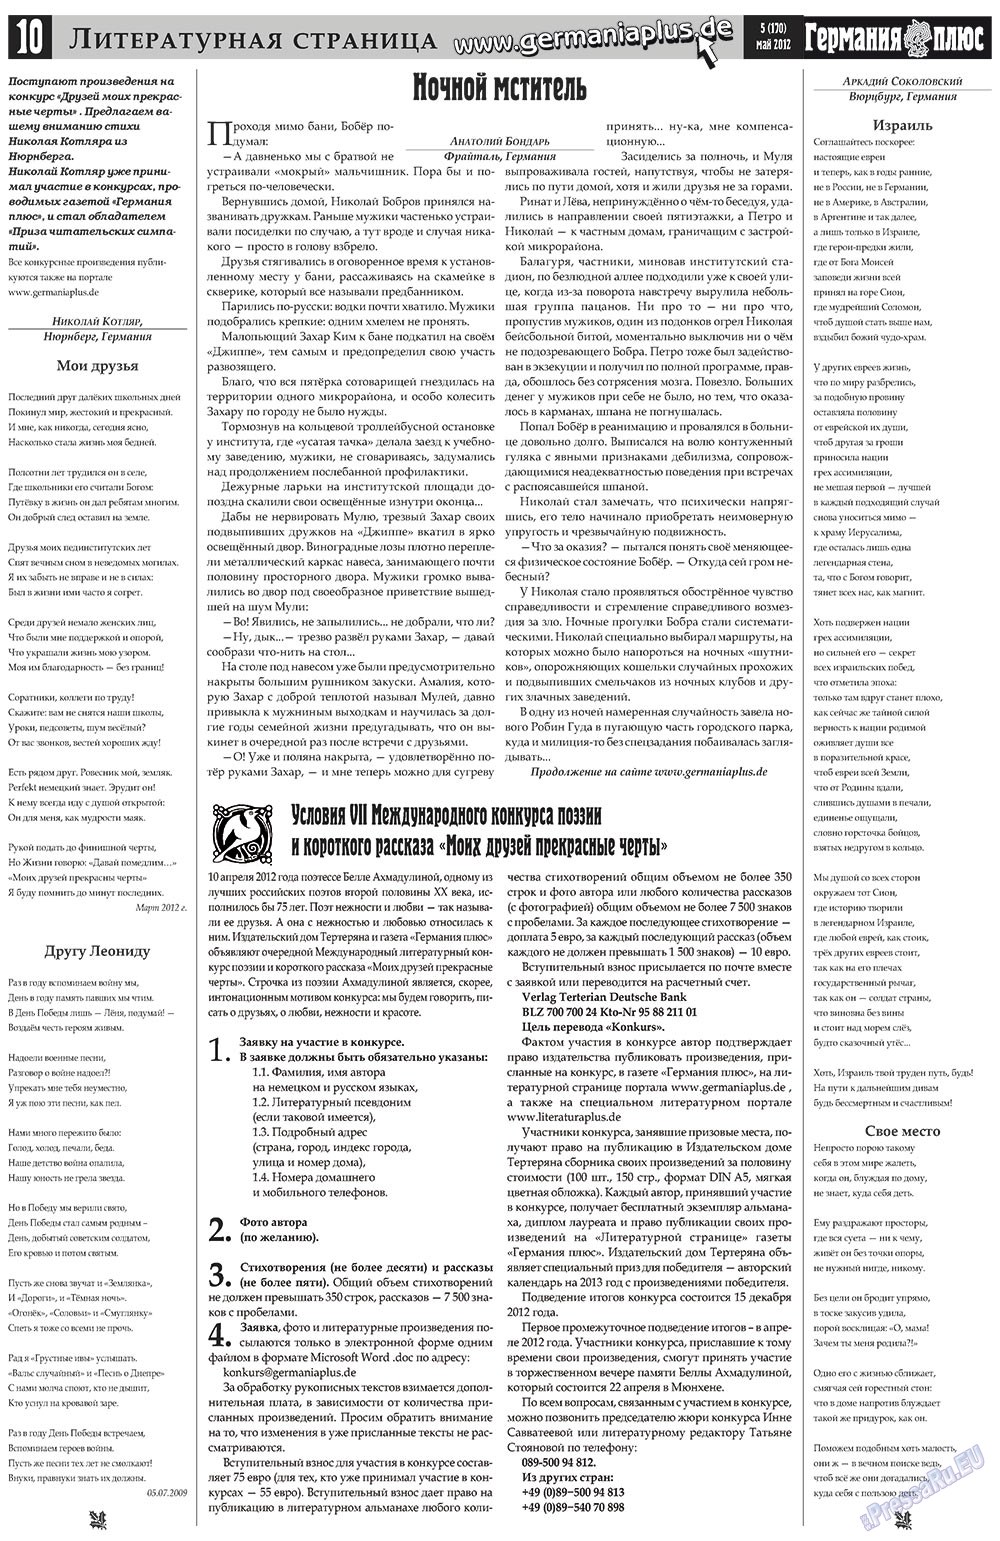 Германия плюс, газета. 2012 №5 стр.10